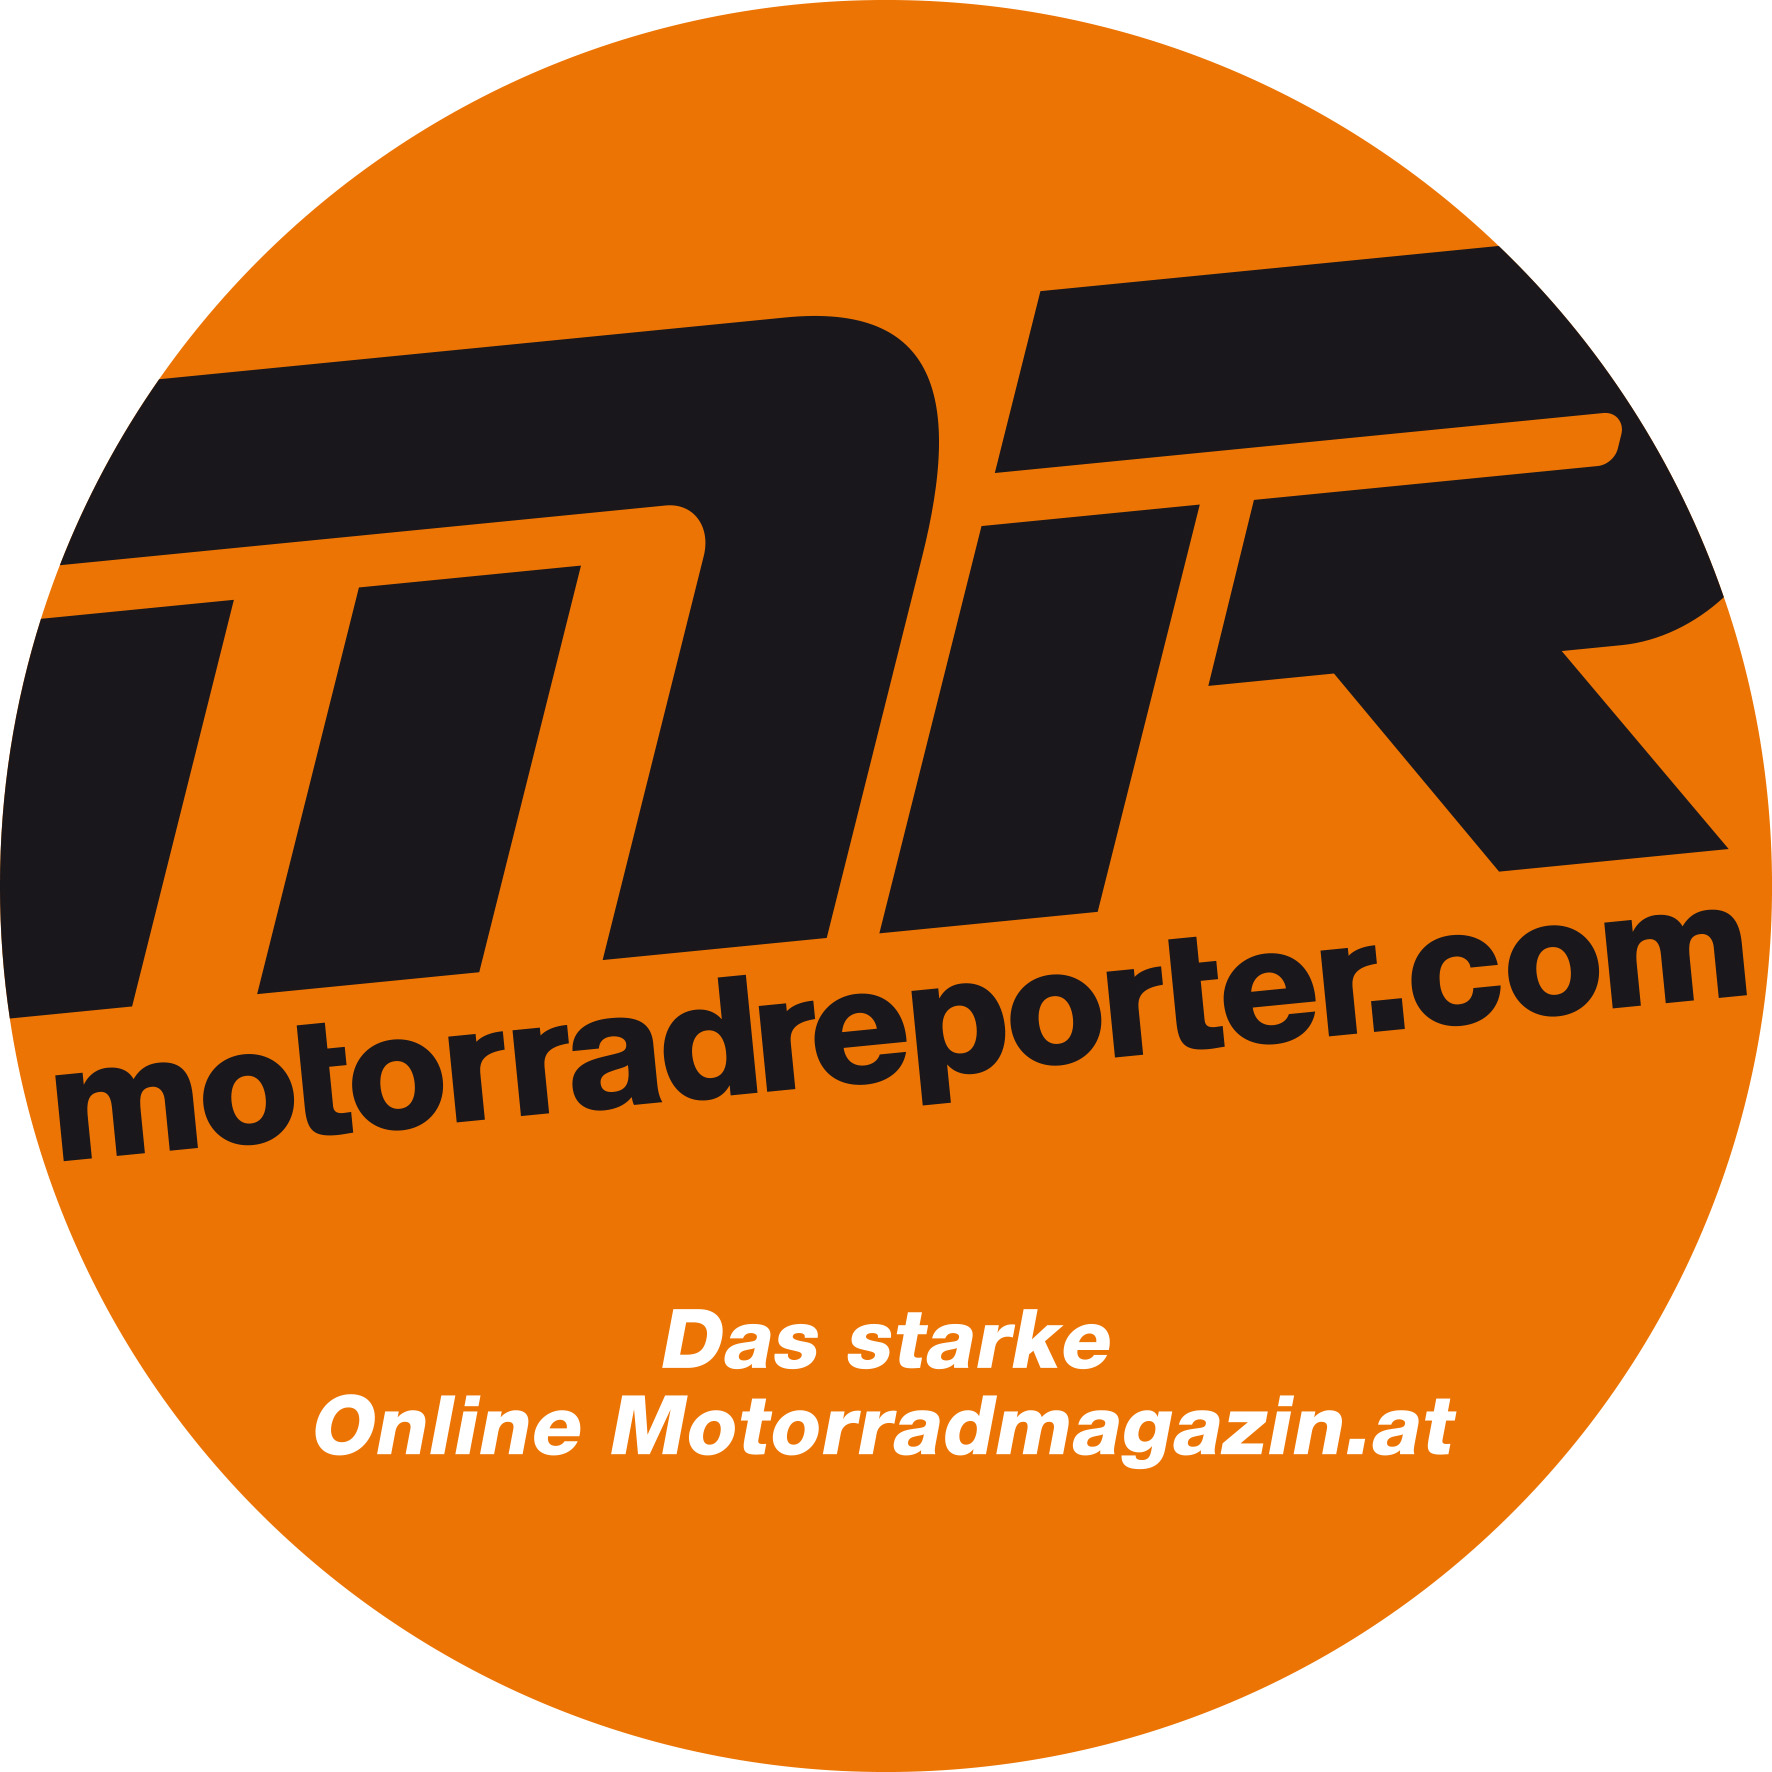 Motorradreporter.com, das online Motorradmagazin.at